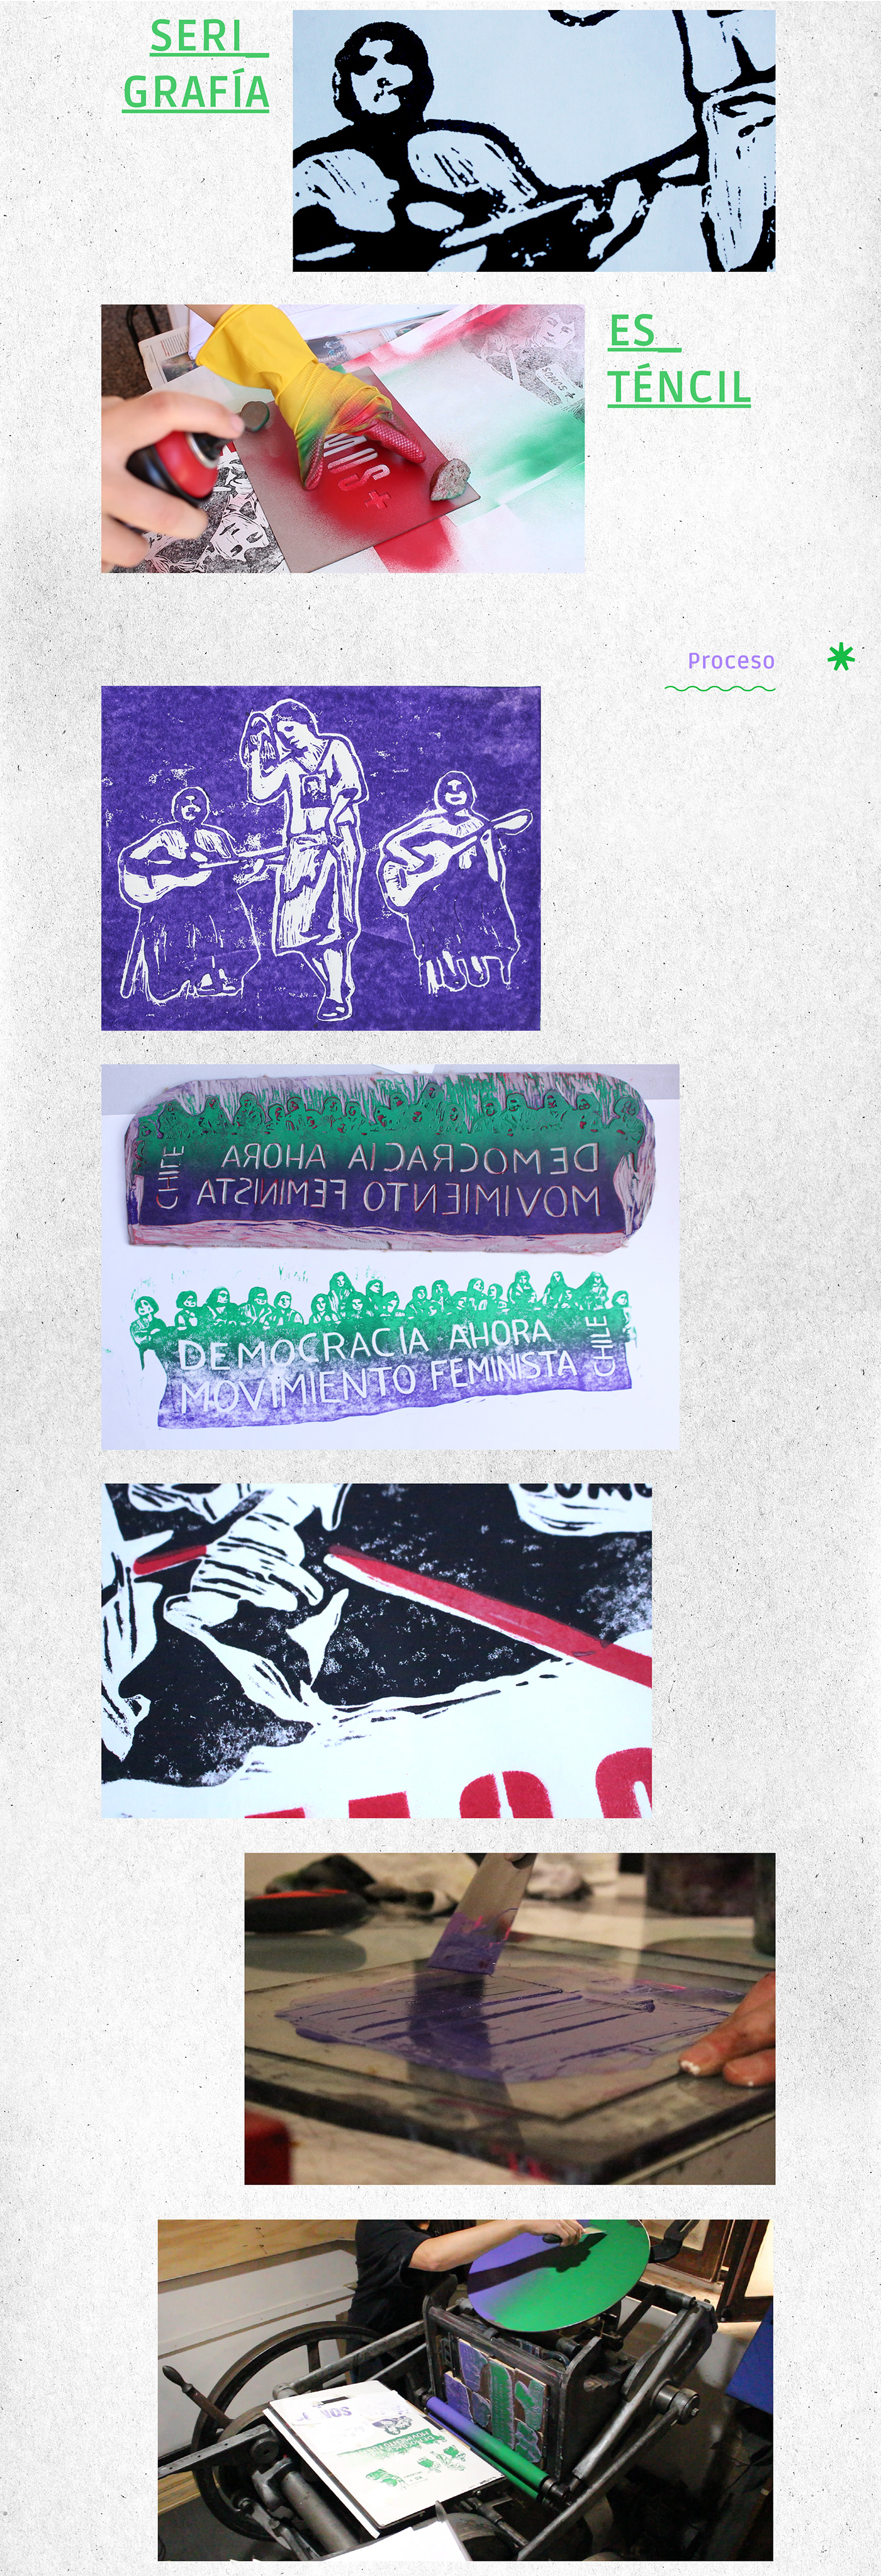 chile dictadura militar feminismo grafica izquierda chilena linografia movimiento de mujeres Mujeres serigrafia stencil